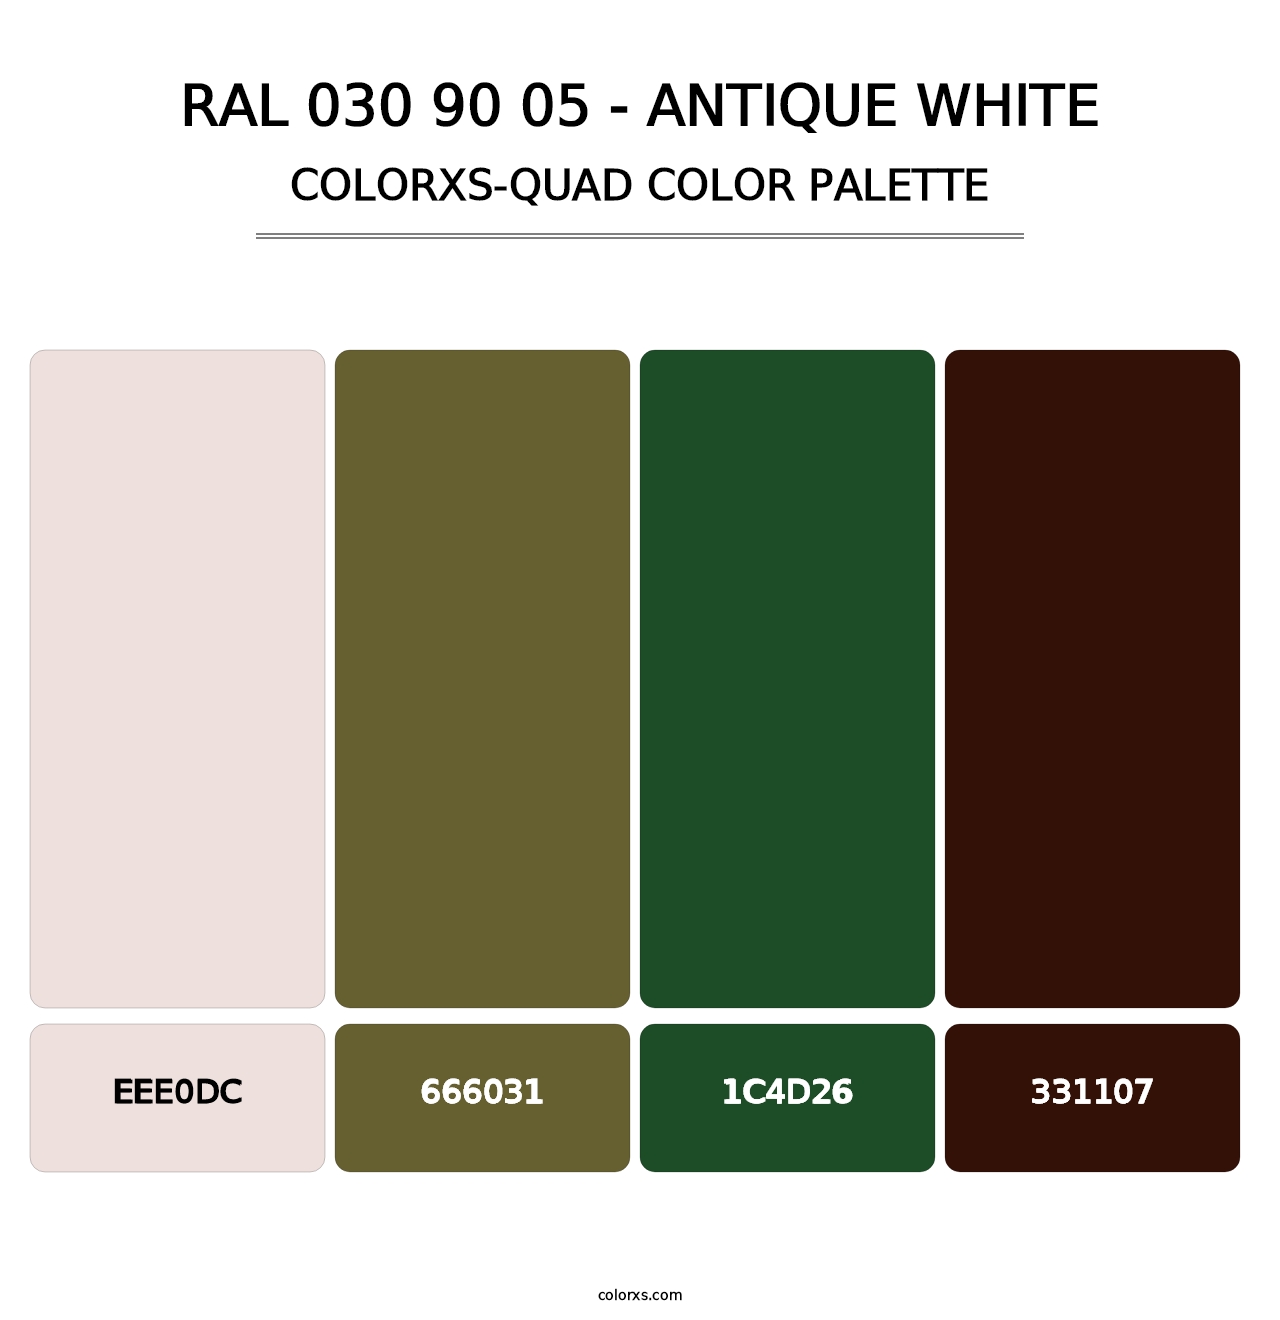 RAL 030 90 05 - Antique White - Colorxs Quad Palette